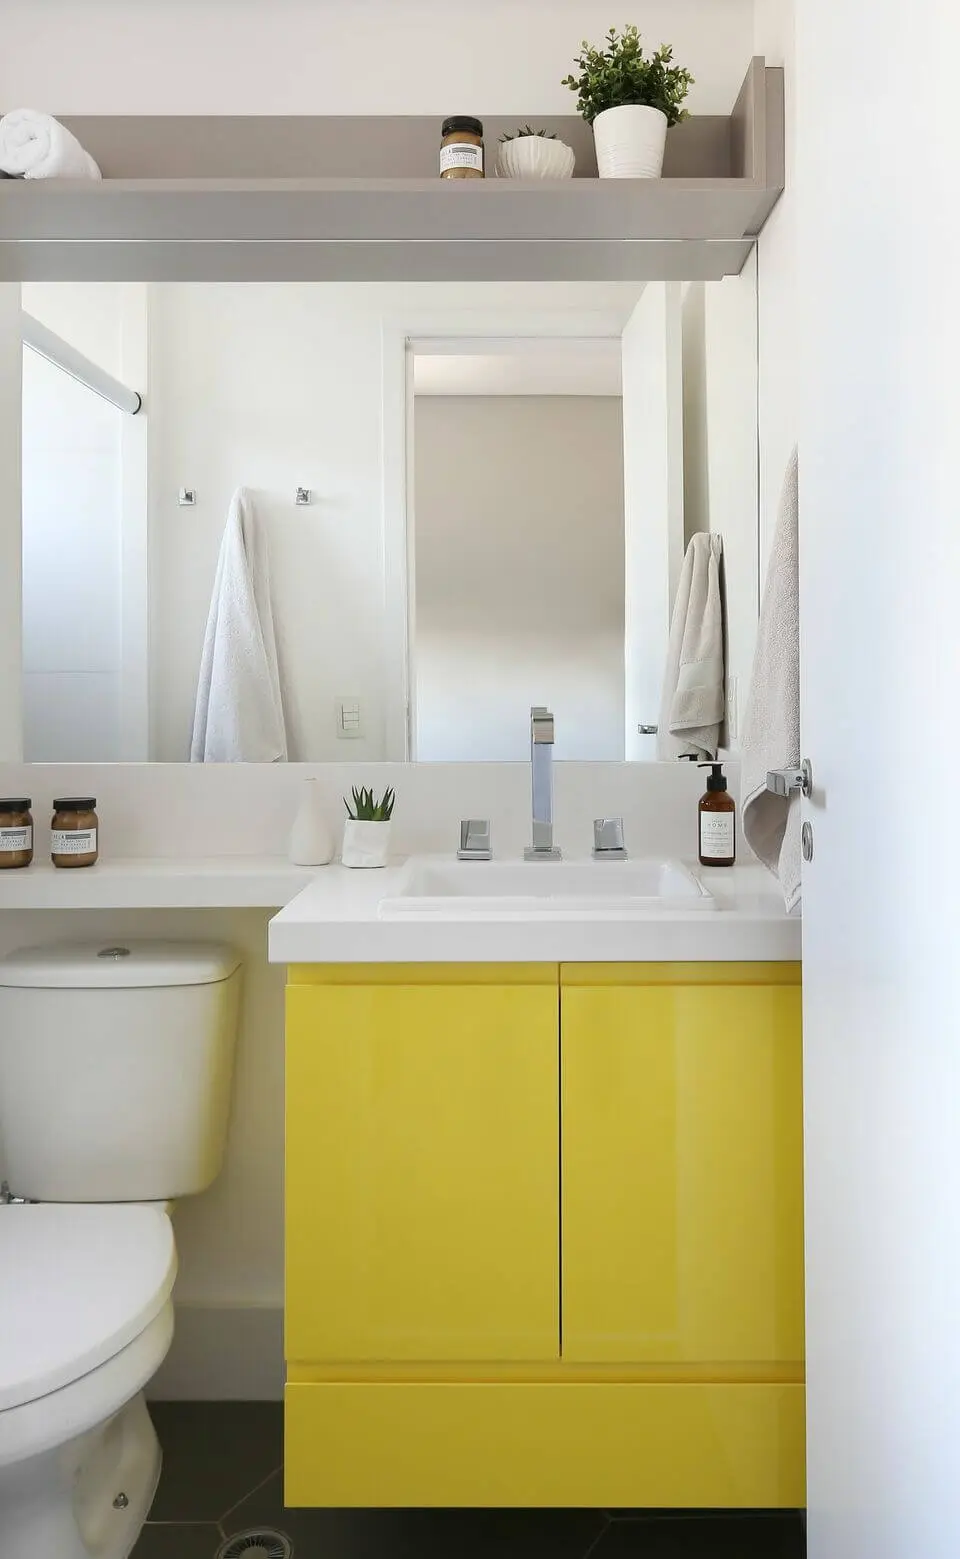 cor amarela - armário amarelo no banheiro branco 